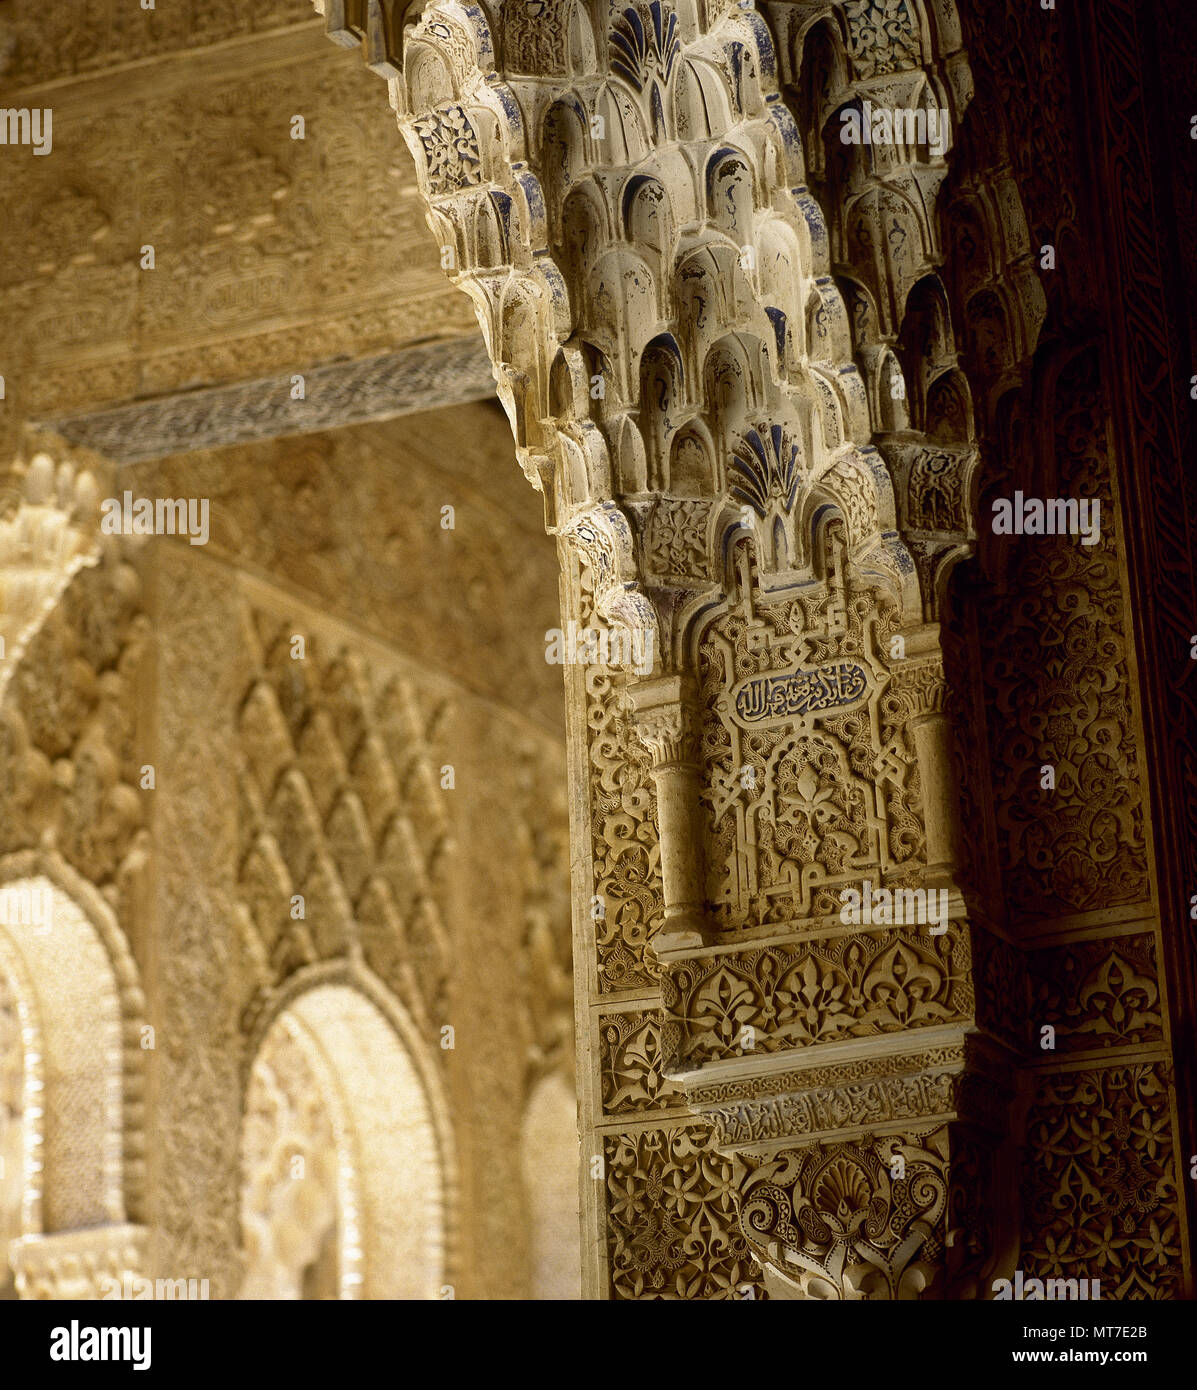 Granada, Andalusia, Spagna. L'Alhambra. Palazzo Reale costruito nel 1238 da Nasrid emiro Mohammed ben al-almar di Granada. Dettagli decorativi delle camere. Tecnica di Yeseria stalattiti e lavoro. Foto Stock